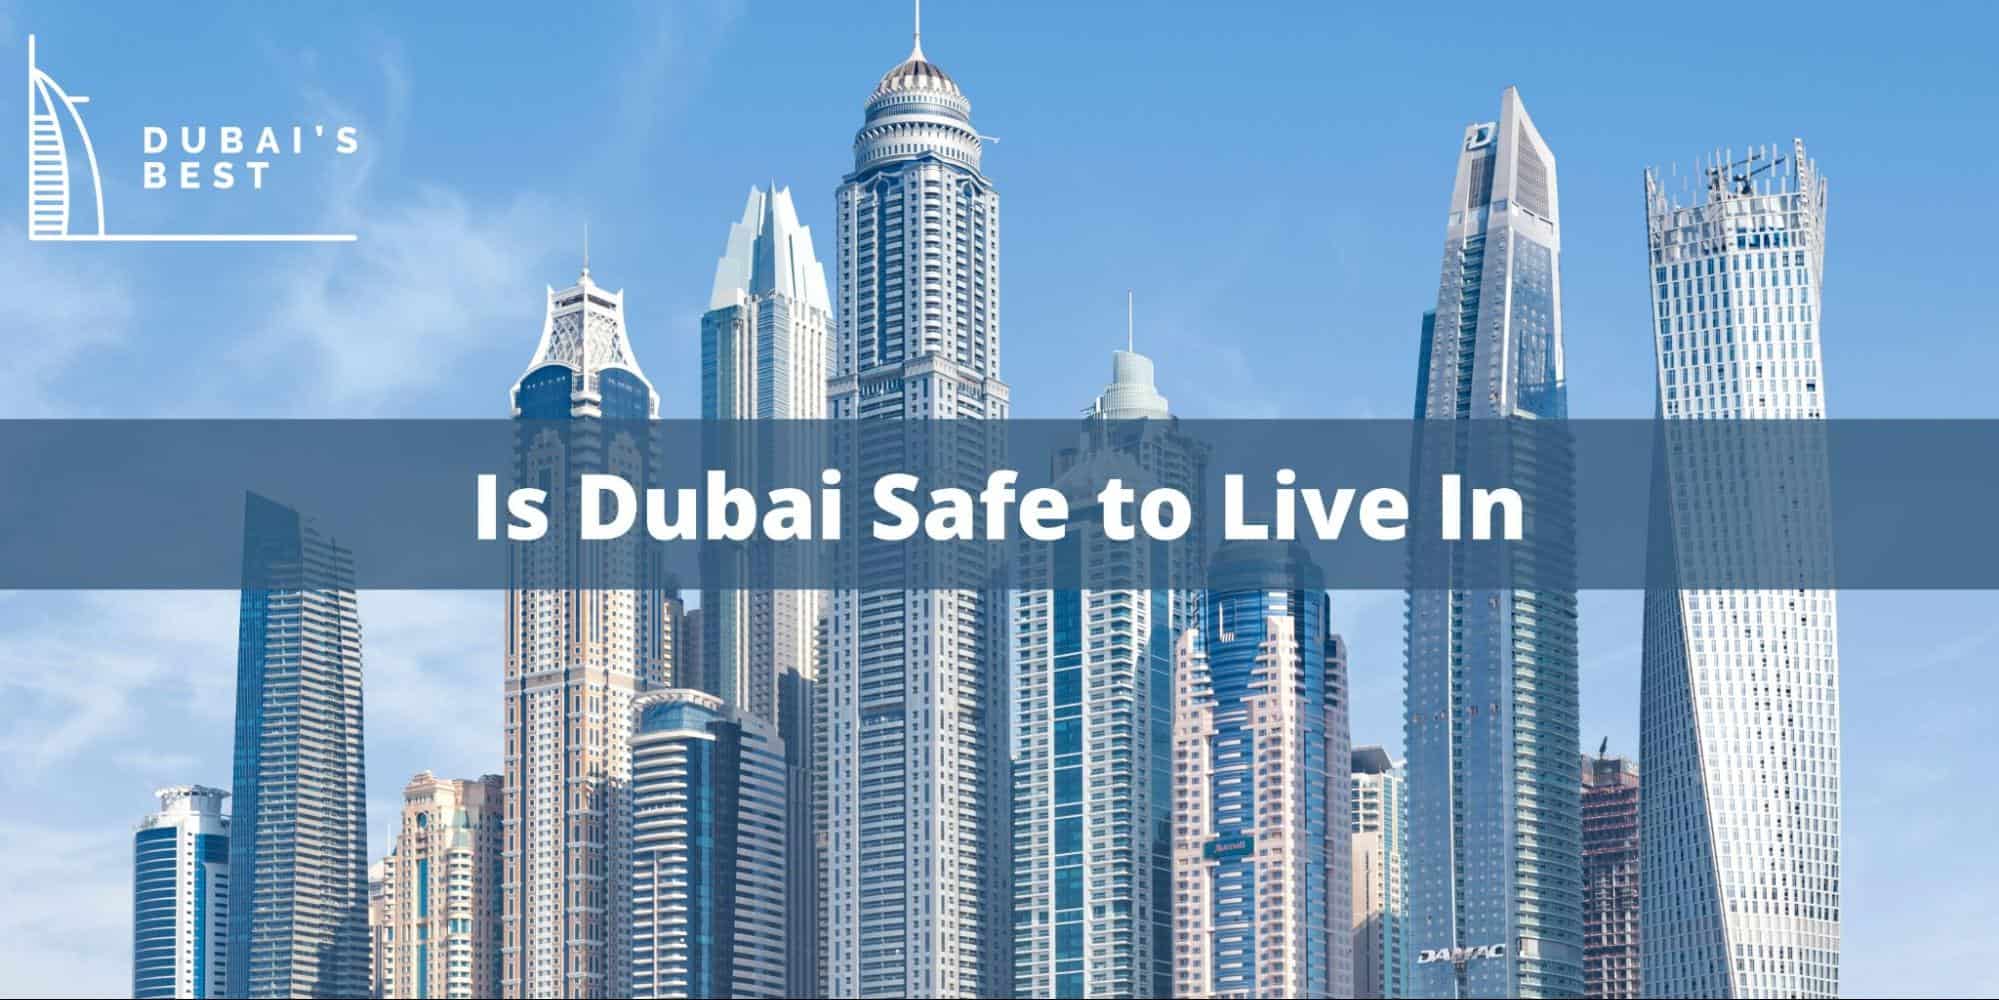 Dubai Safe City